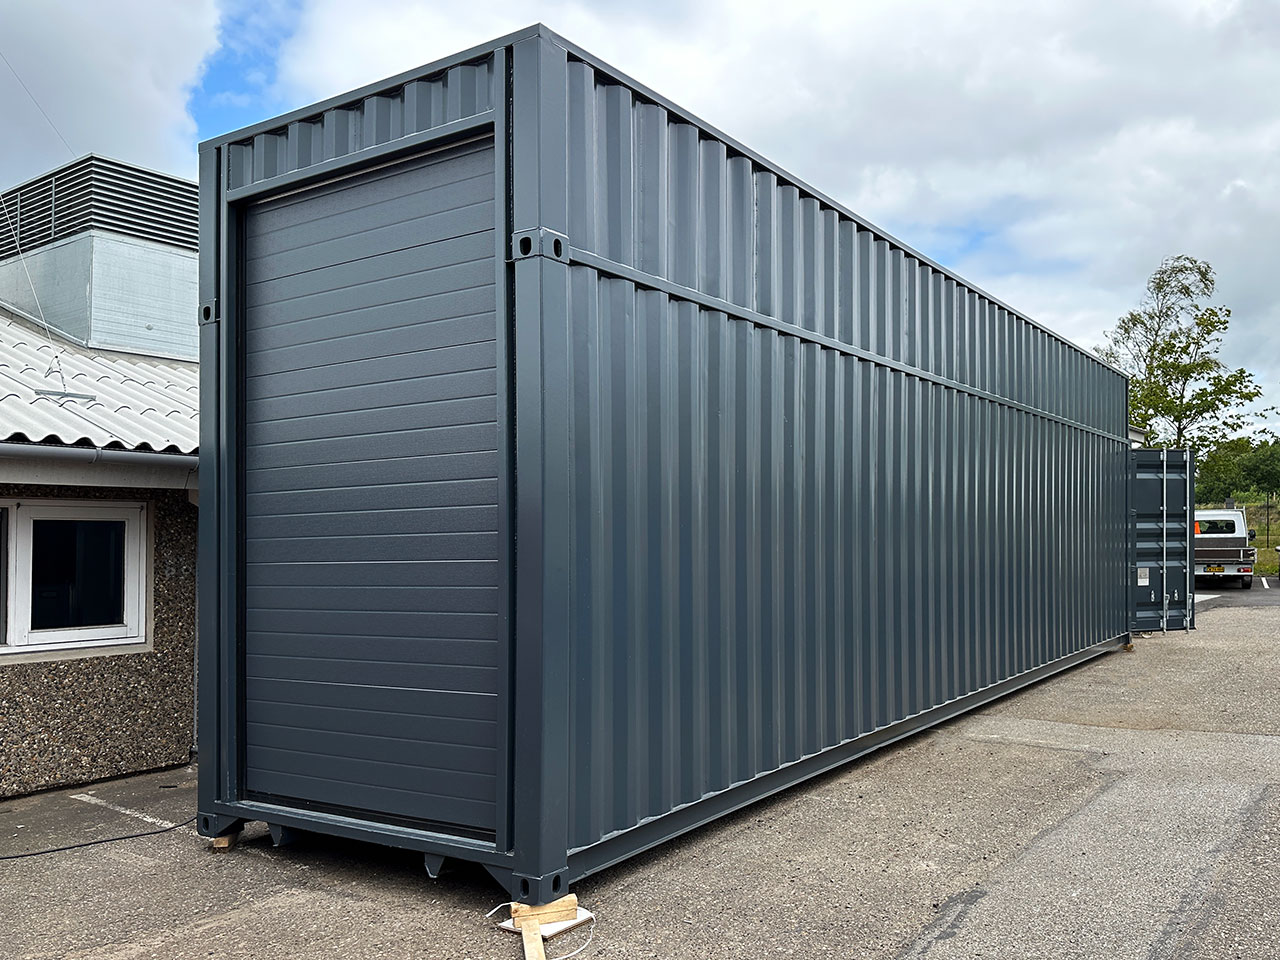 Specialbygget 40-fods High Cube container med ekstra højde: Skræddersyet til industrielt behov.